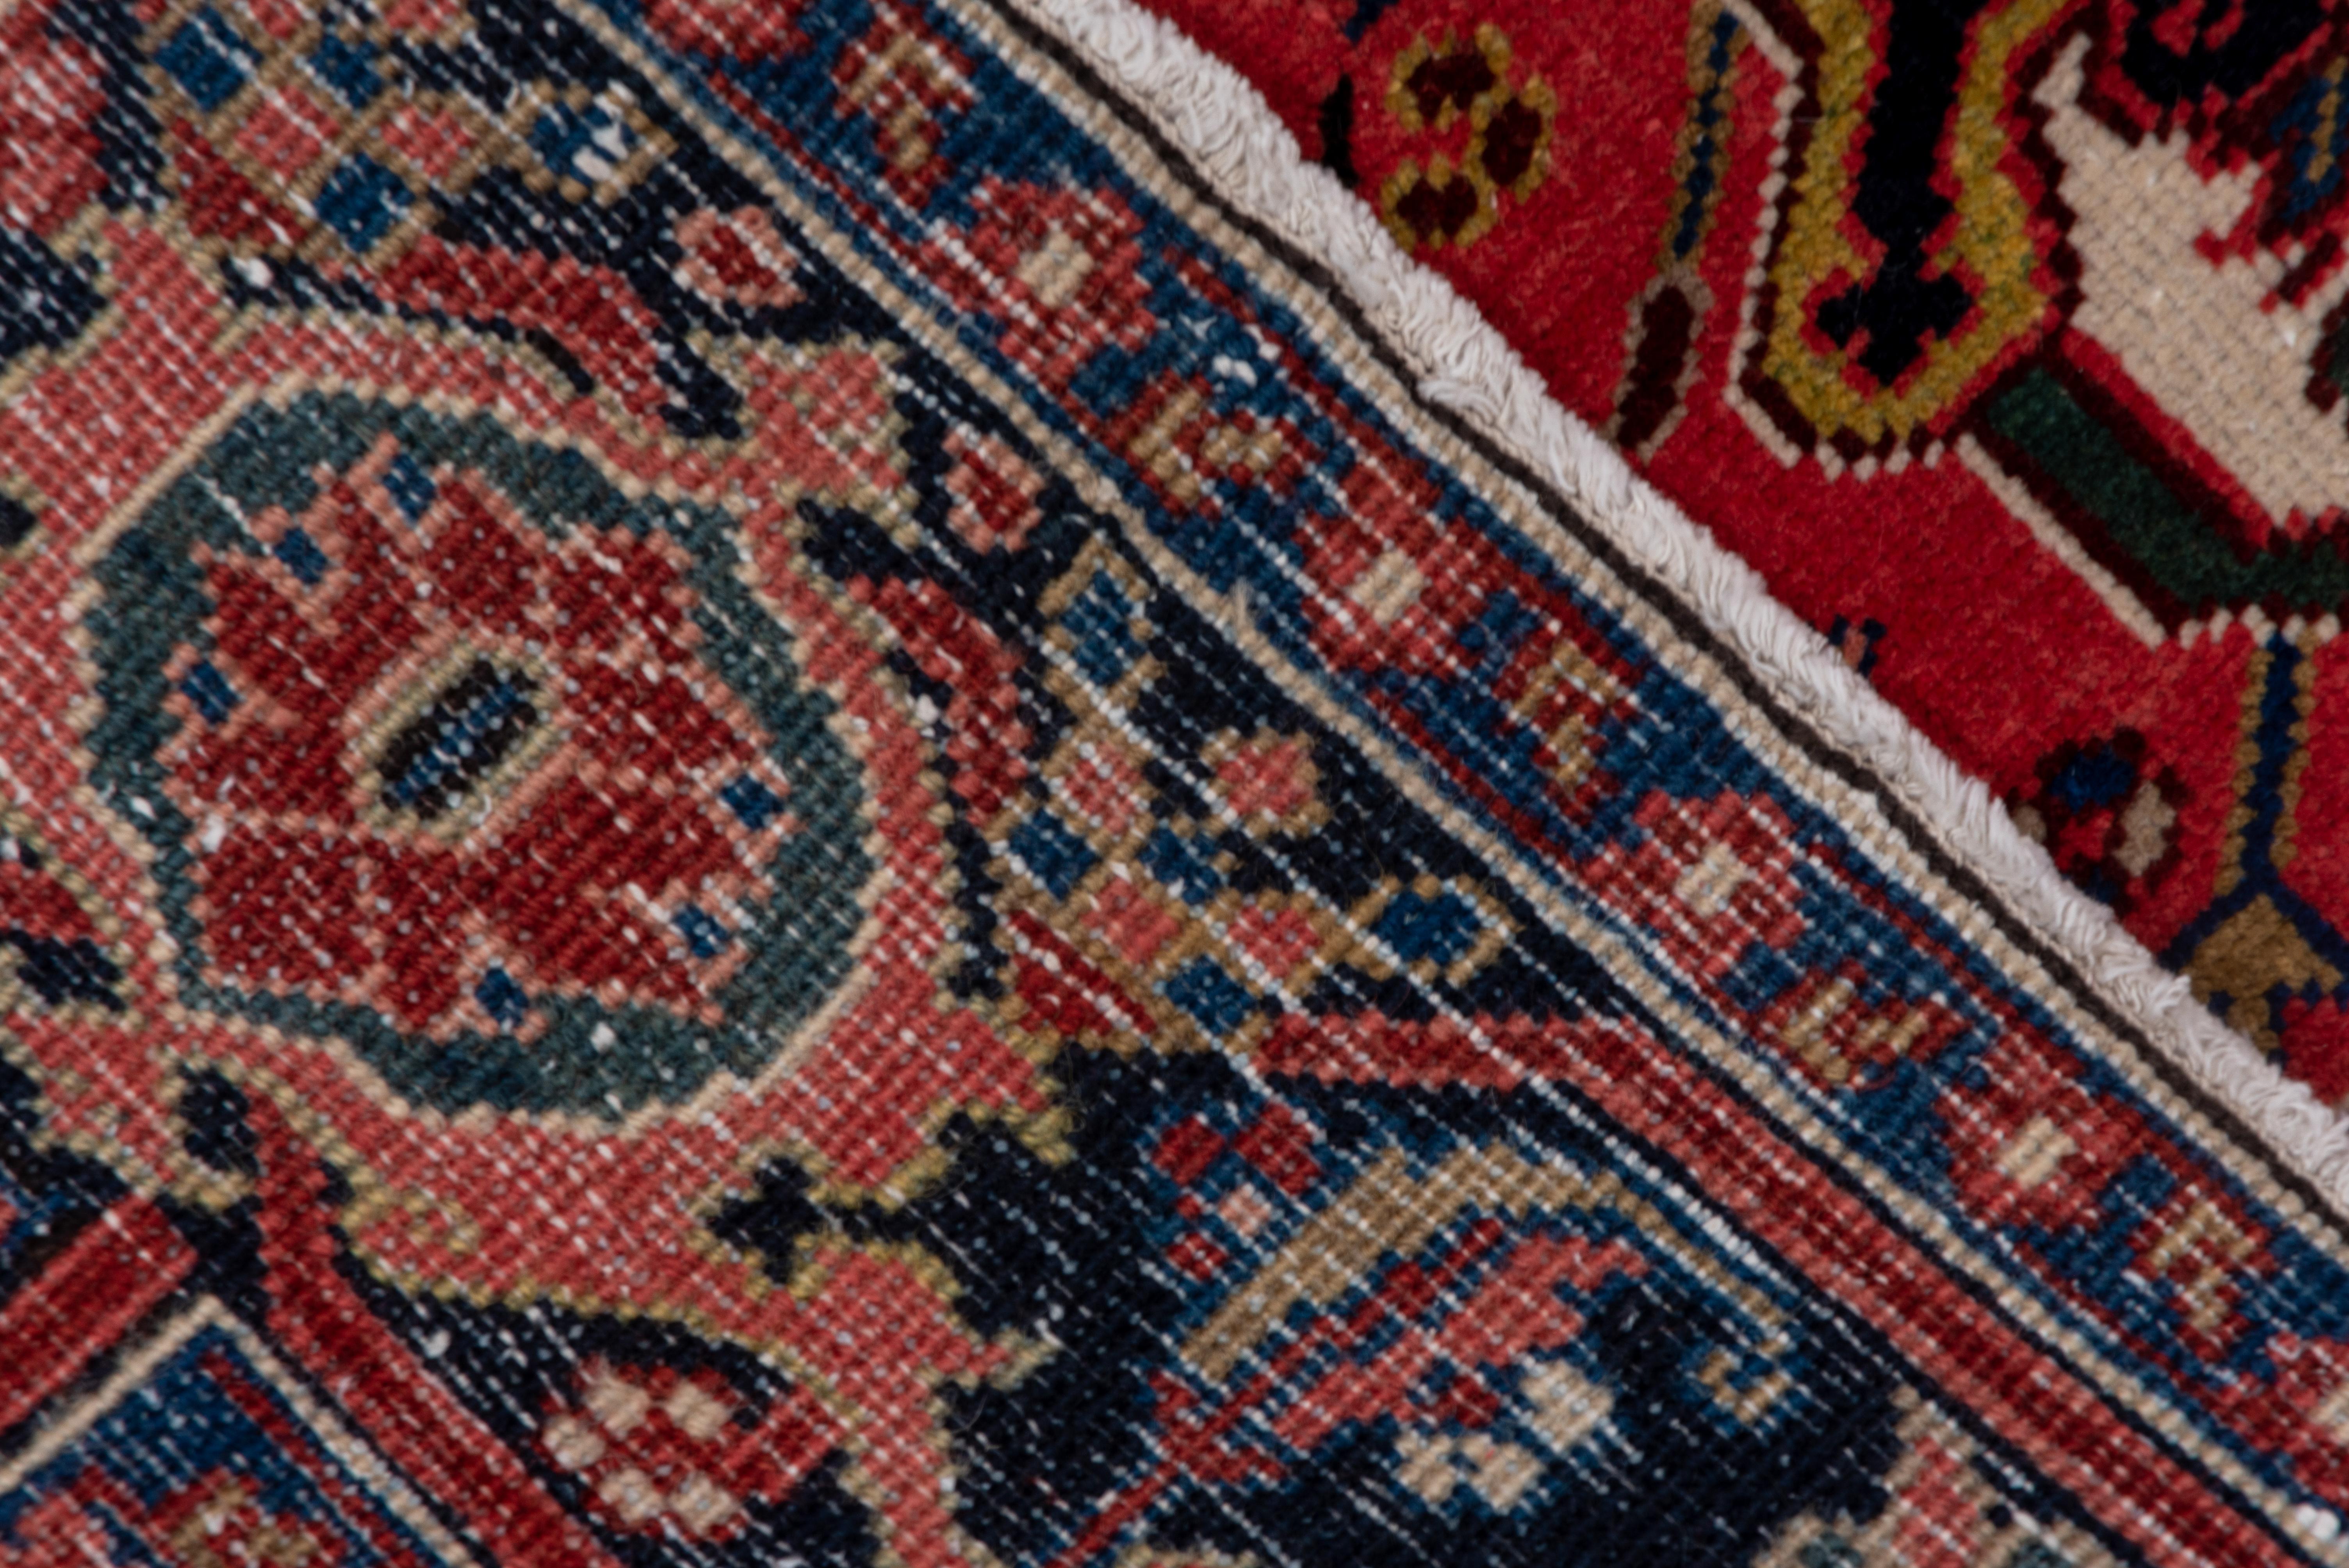 Heriz-Teppiche werden in der nordwestlichen Region des Iran gewebt. Sie sind bekannt für ihre langlebige Wollqualität und geometrischen Designs. Sie sind stark von der Geometrie der kaukasischen Teppiche aus dem Kaukasus beeinflusst, der nördlich